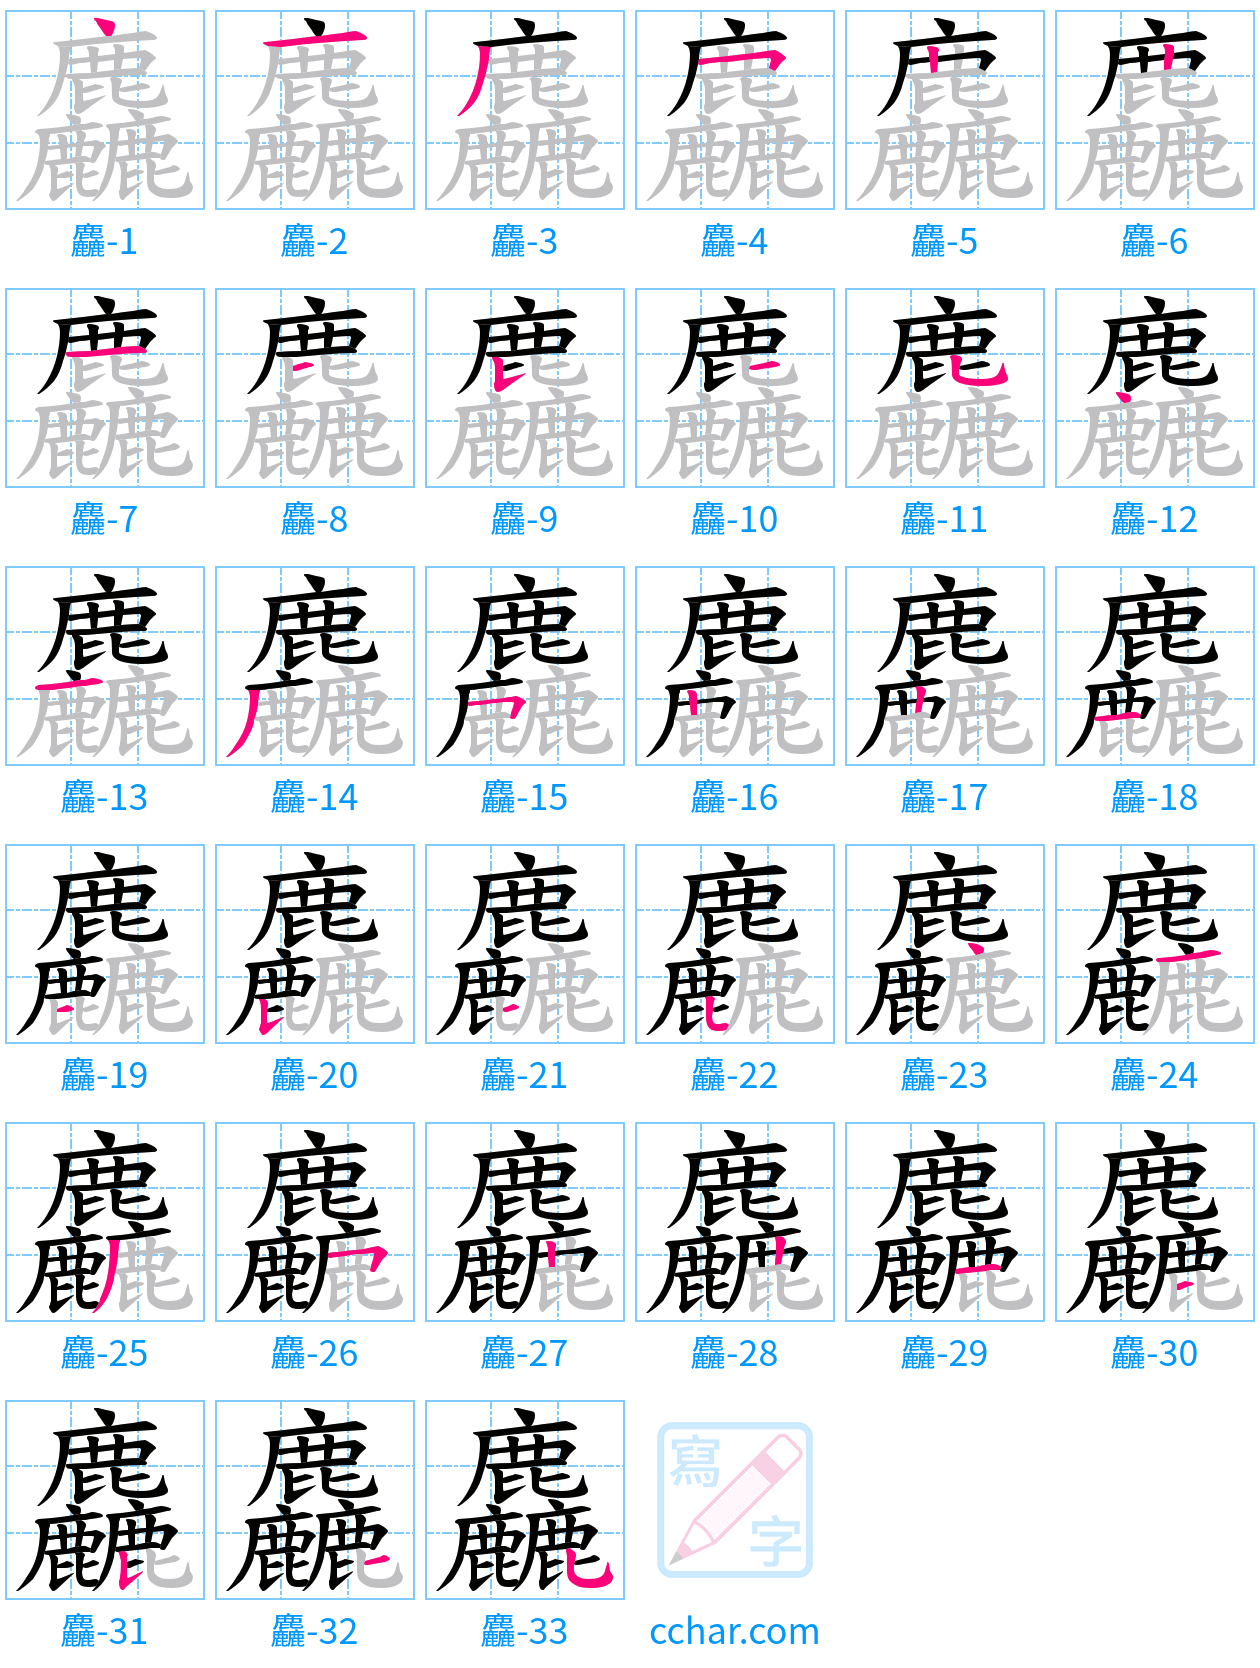 麤 stroke order step-by-step diagram